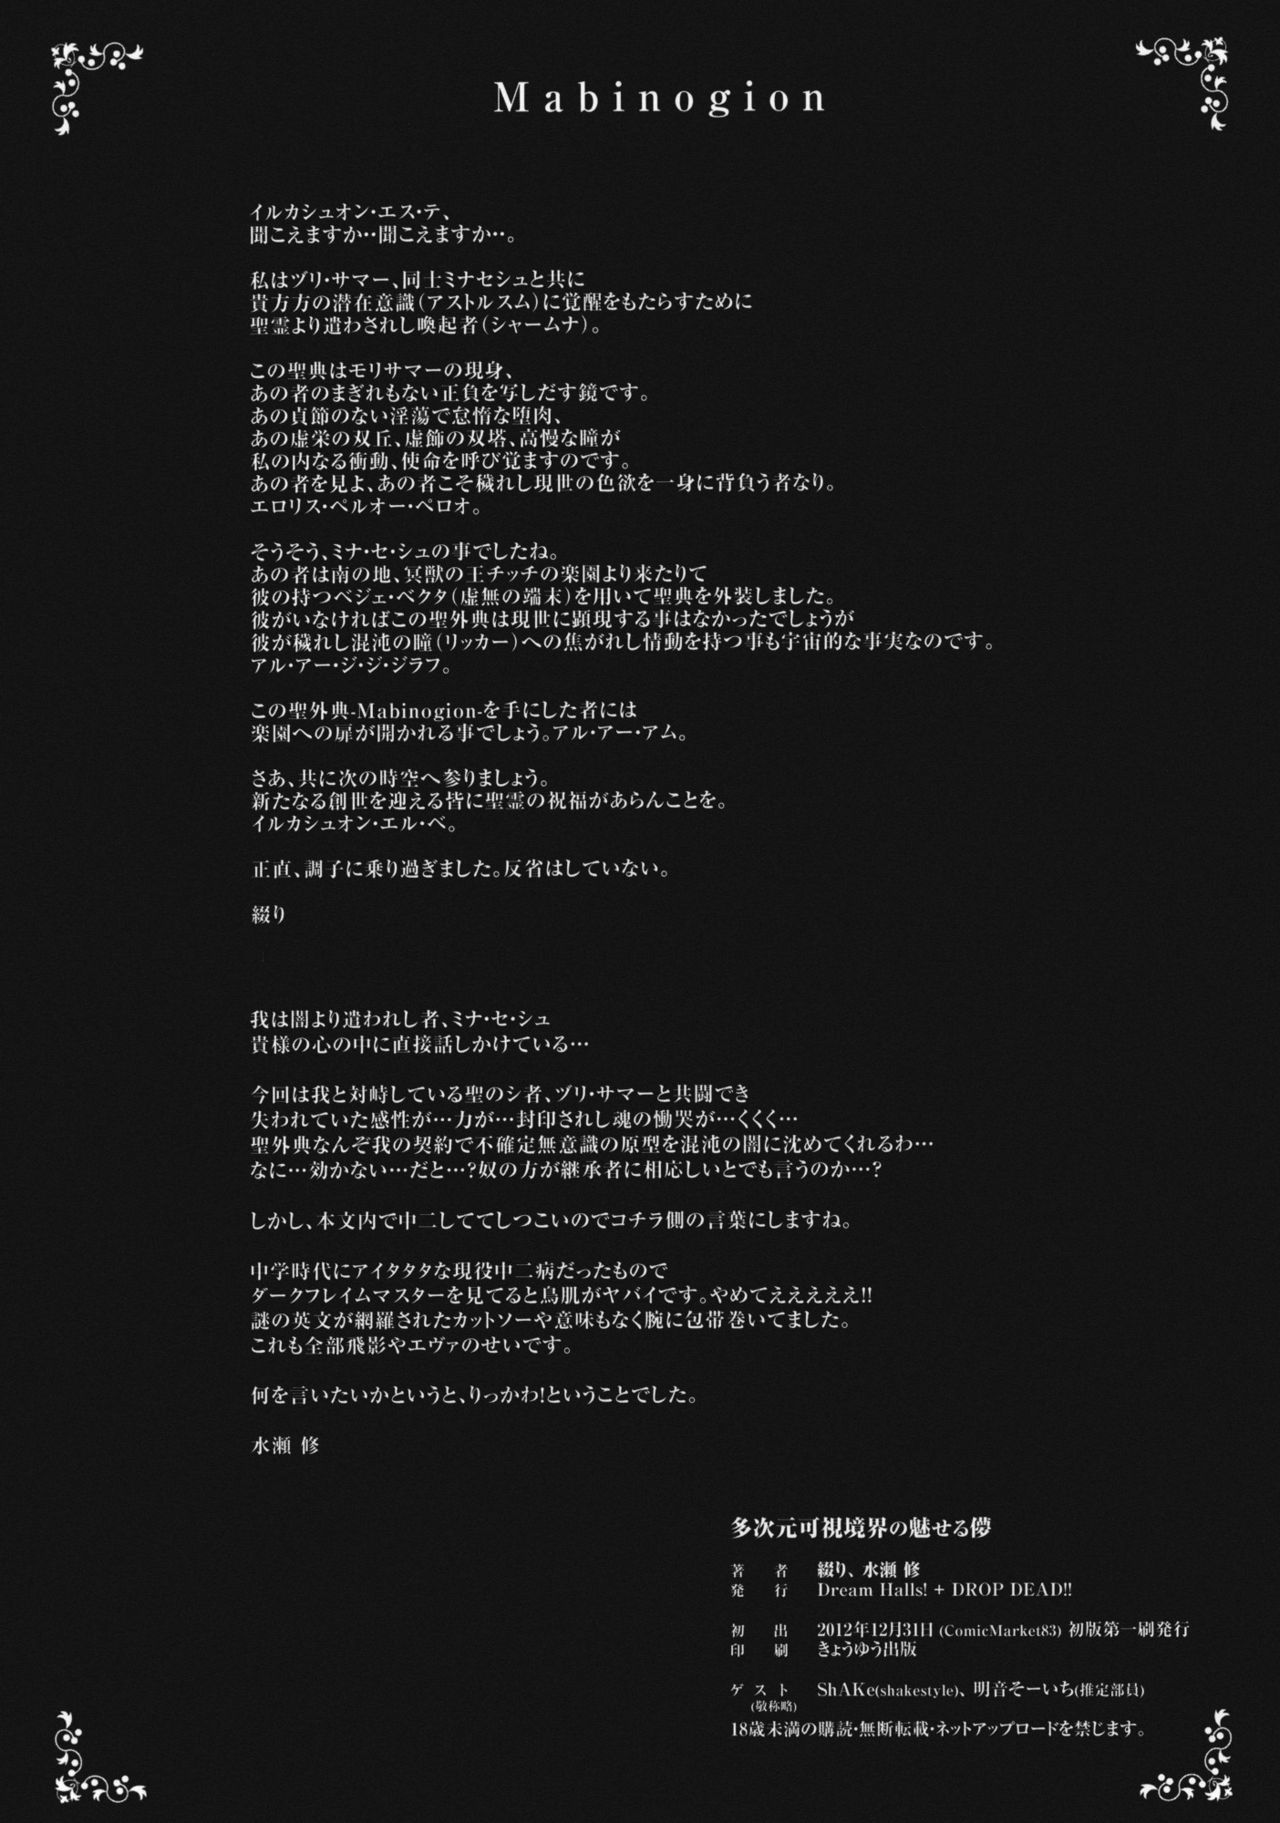 (C83) [Dream Halls!, DROP DEAD!! (Tsuzuri, Minase Syu)] Tajigen Kashi Kyoukai no Miseru Yume (Chuunibyou Demo Koi ga Shitai!) (C83) [Dream Halls! + DROP DEAD!! (綴り、水瀬修)] 多次元可視境界の魅せる儚 (中二病でも恋がしたい！)